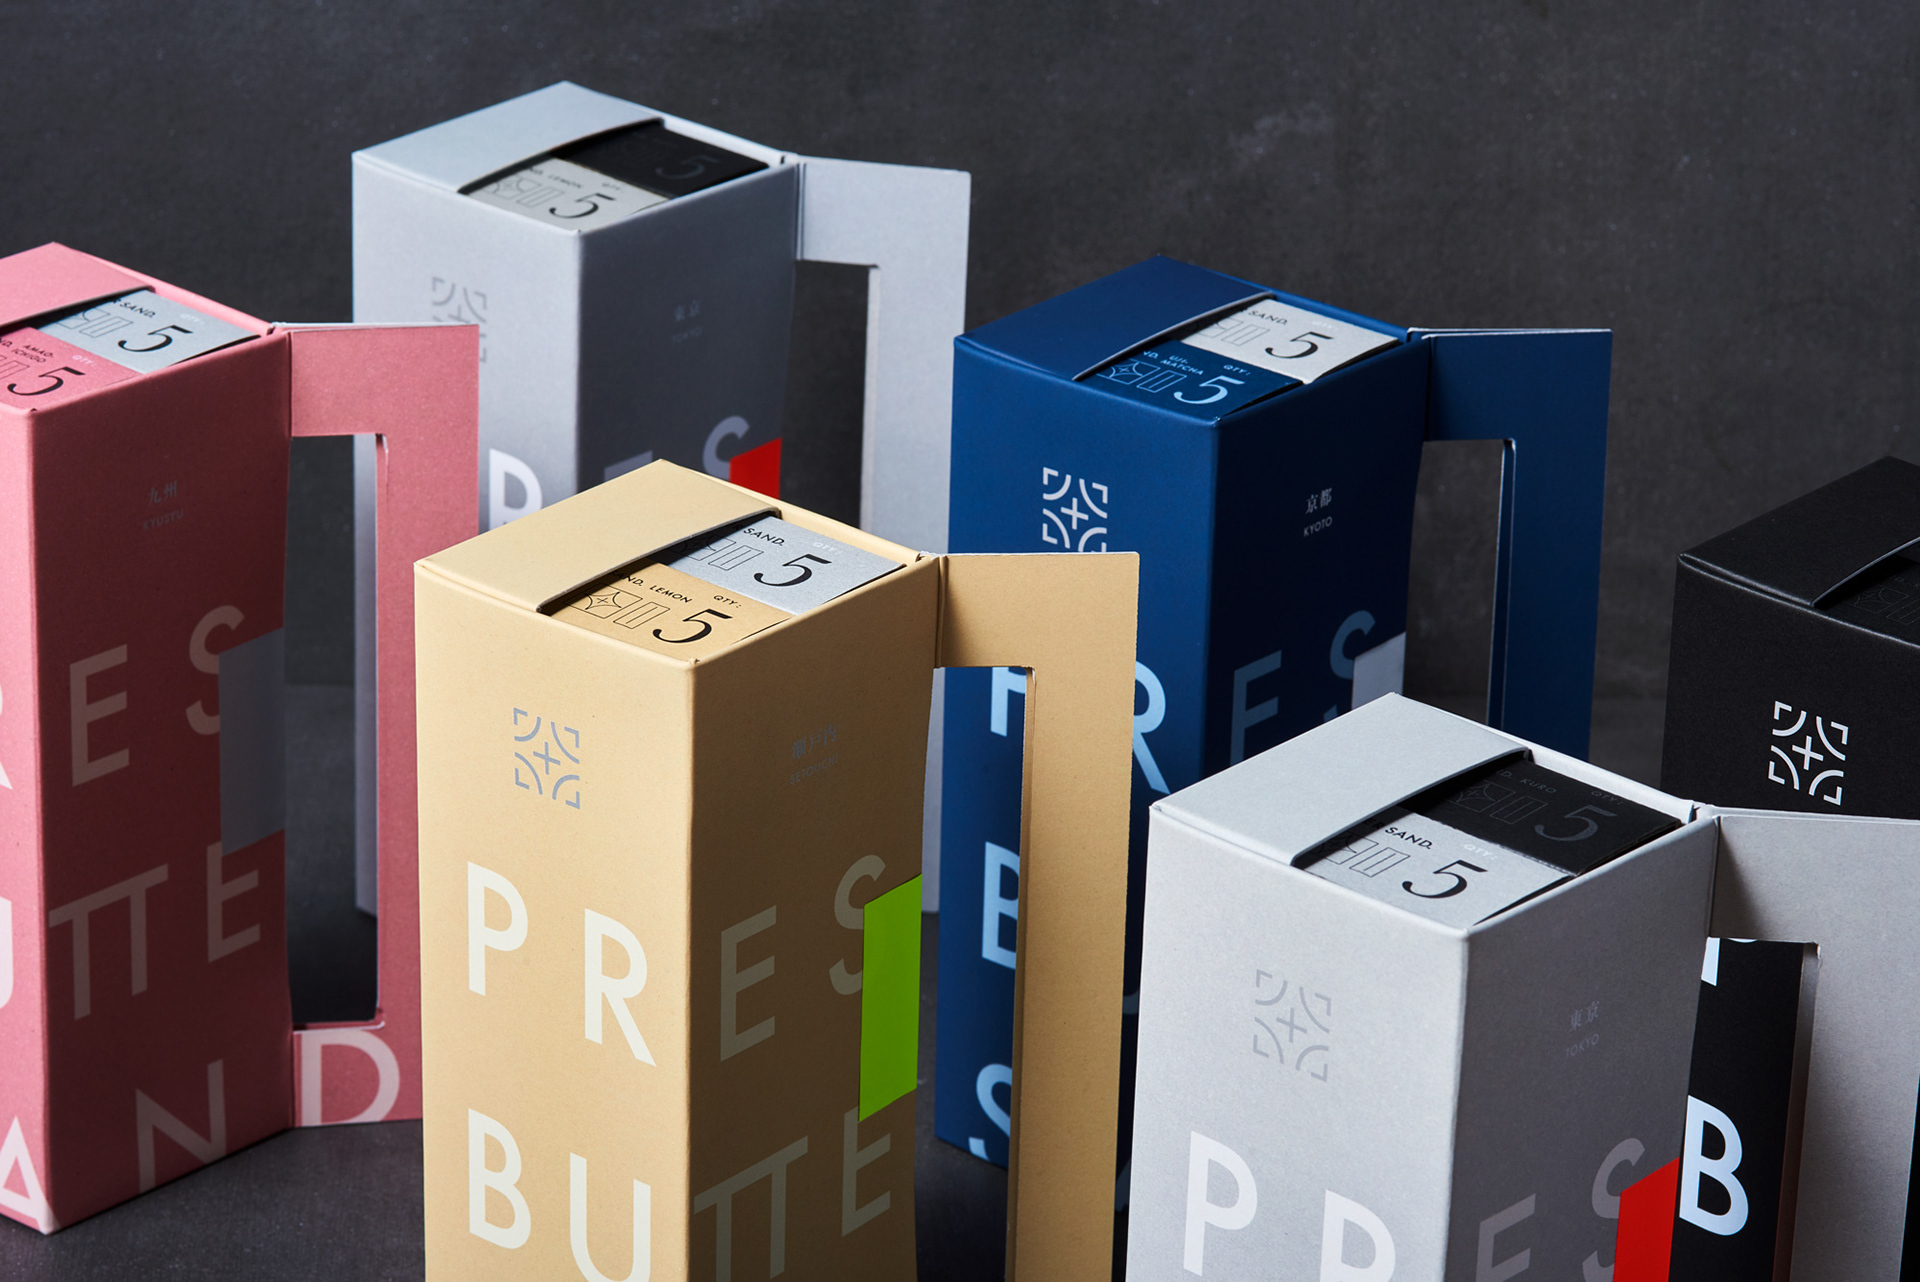 PRESS BUTTER SAND Sleeve Packaging Design